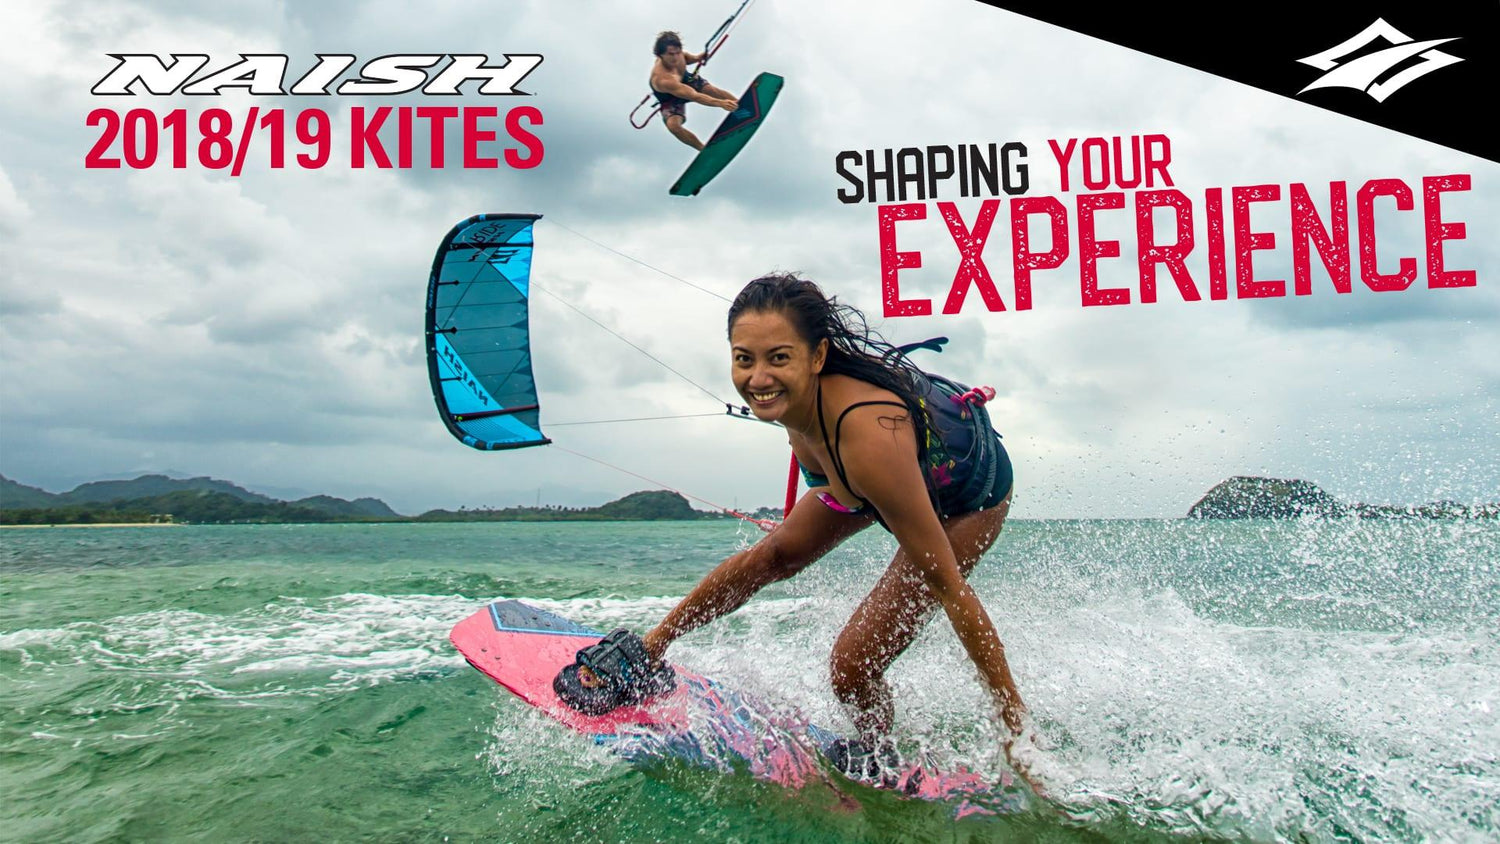 SHAPE YOUR EXPERIENCE | Naish Kiteboarding 2018/19 - Naish.com